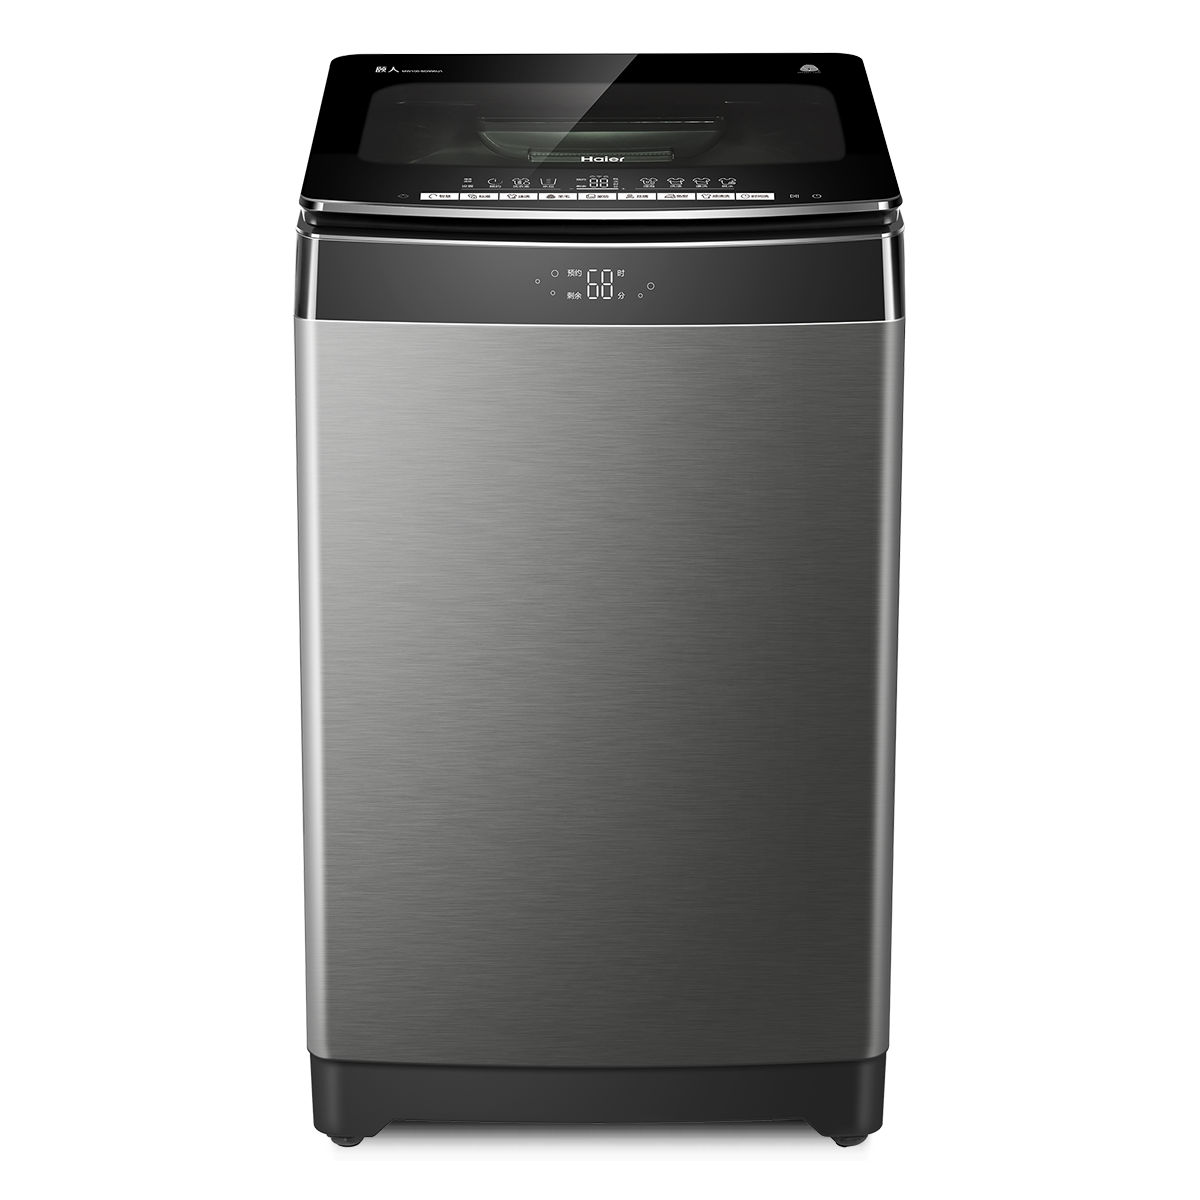 海尔Haier洗衣机 MW100-BD996U1 说明书